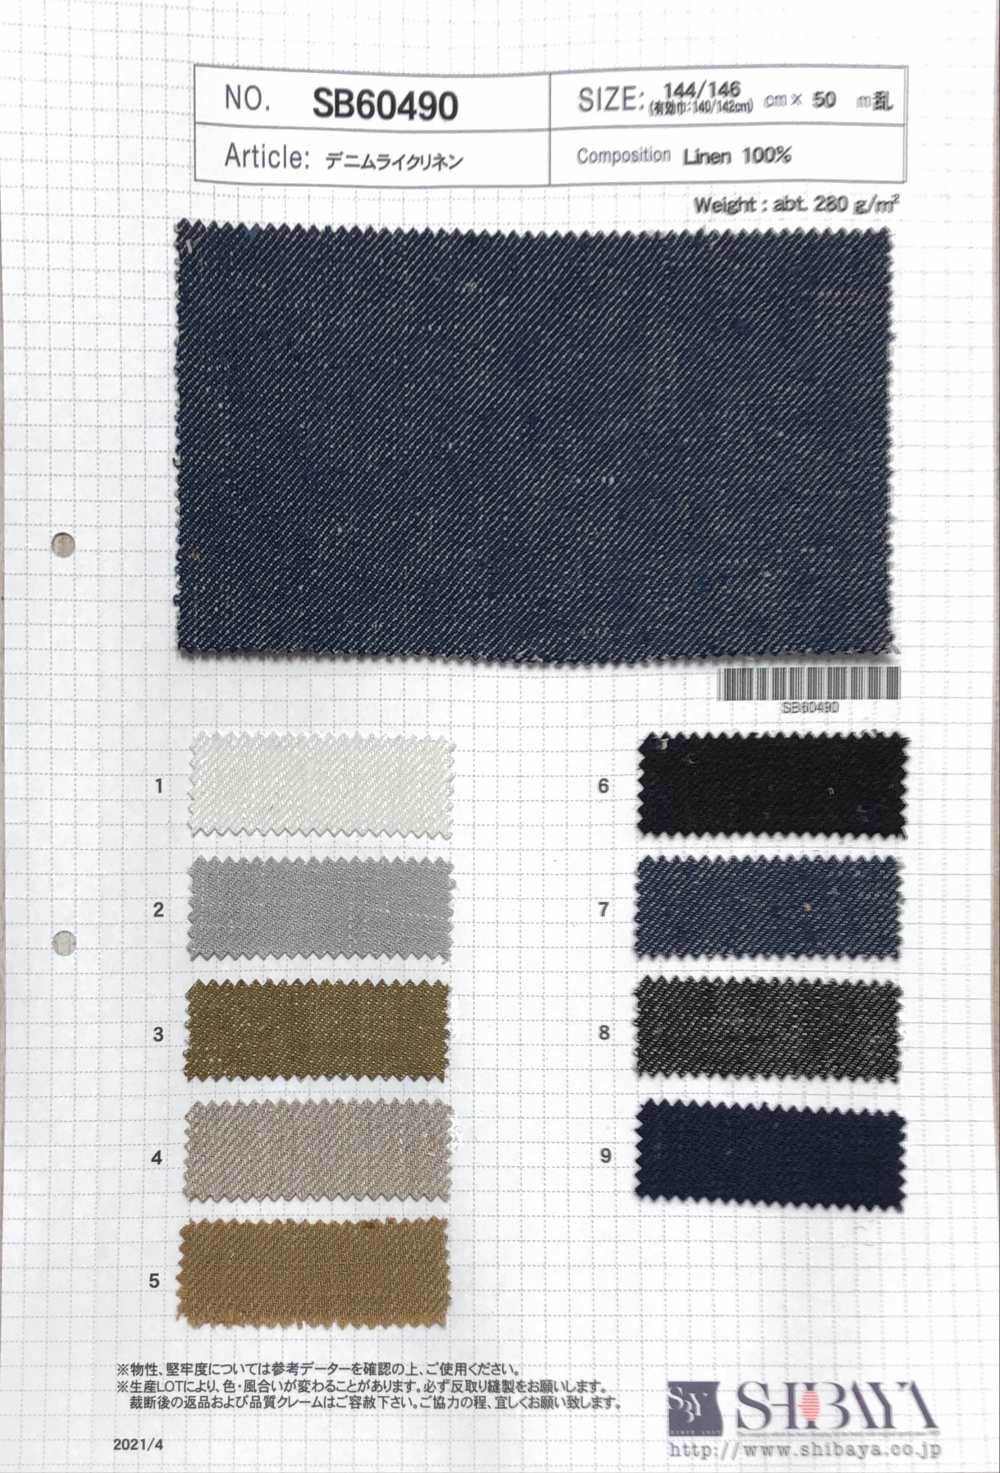 SB60490 Denim Linen[Textile / Fabric] SHIBAYA